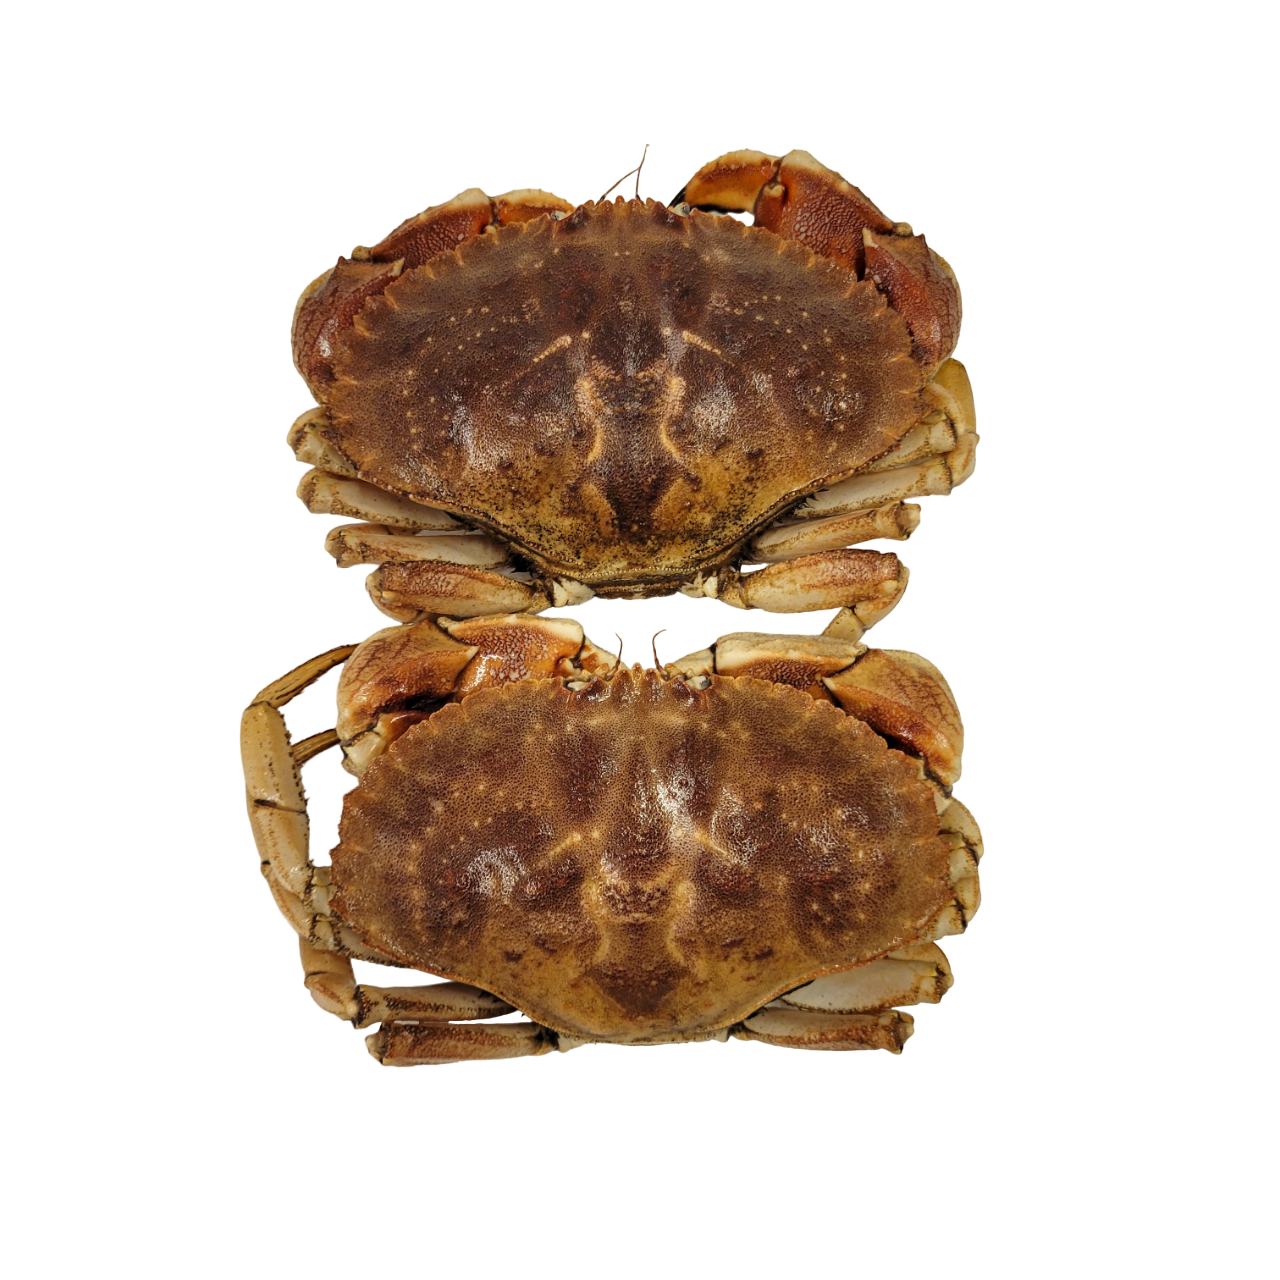 Live Rock Crab